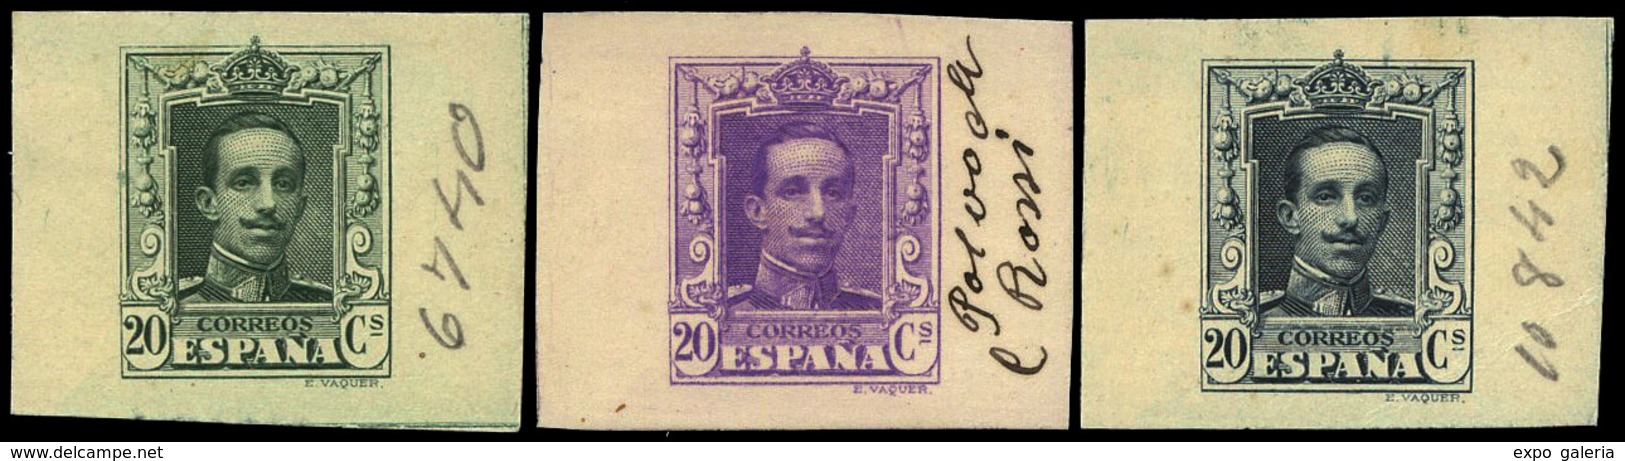 Año 1922 - Conjunto 3 Pruebas De Punzón De Tamaño Reducido. Valor 20 Cts. Sobre Distintos Colores En Cartulina - Unused Stamps